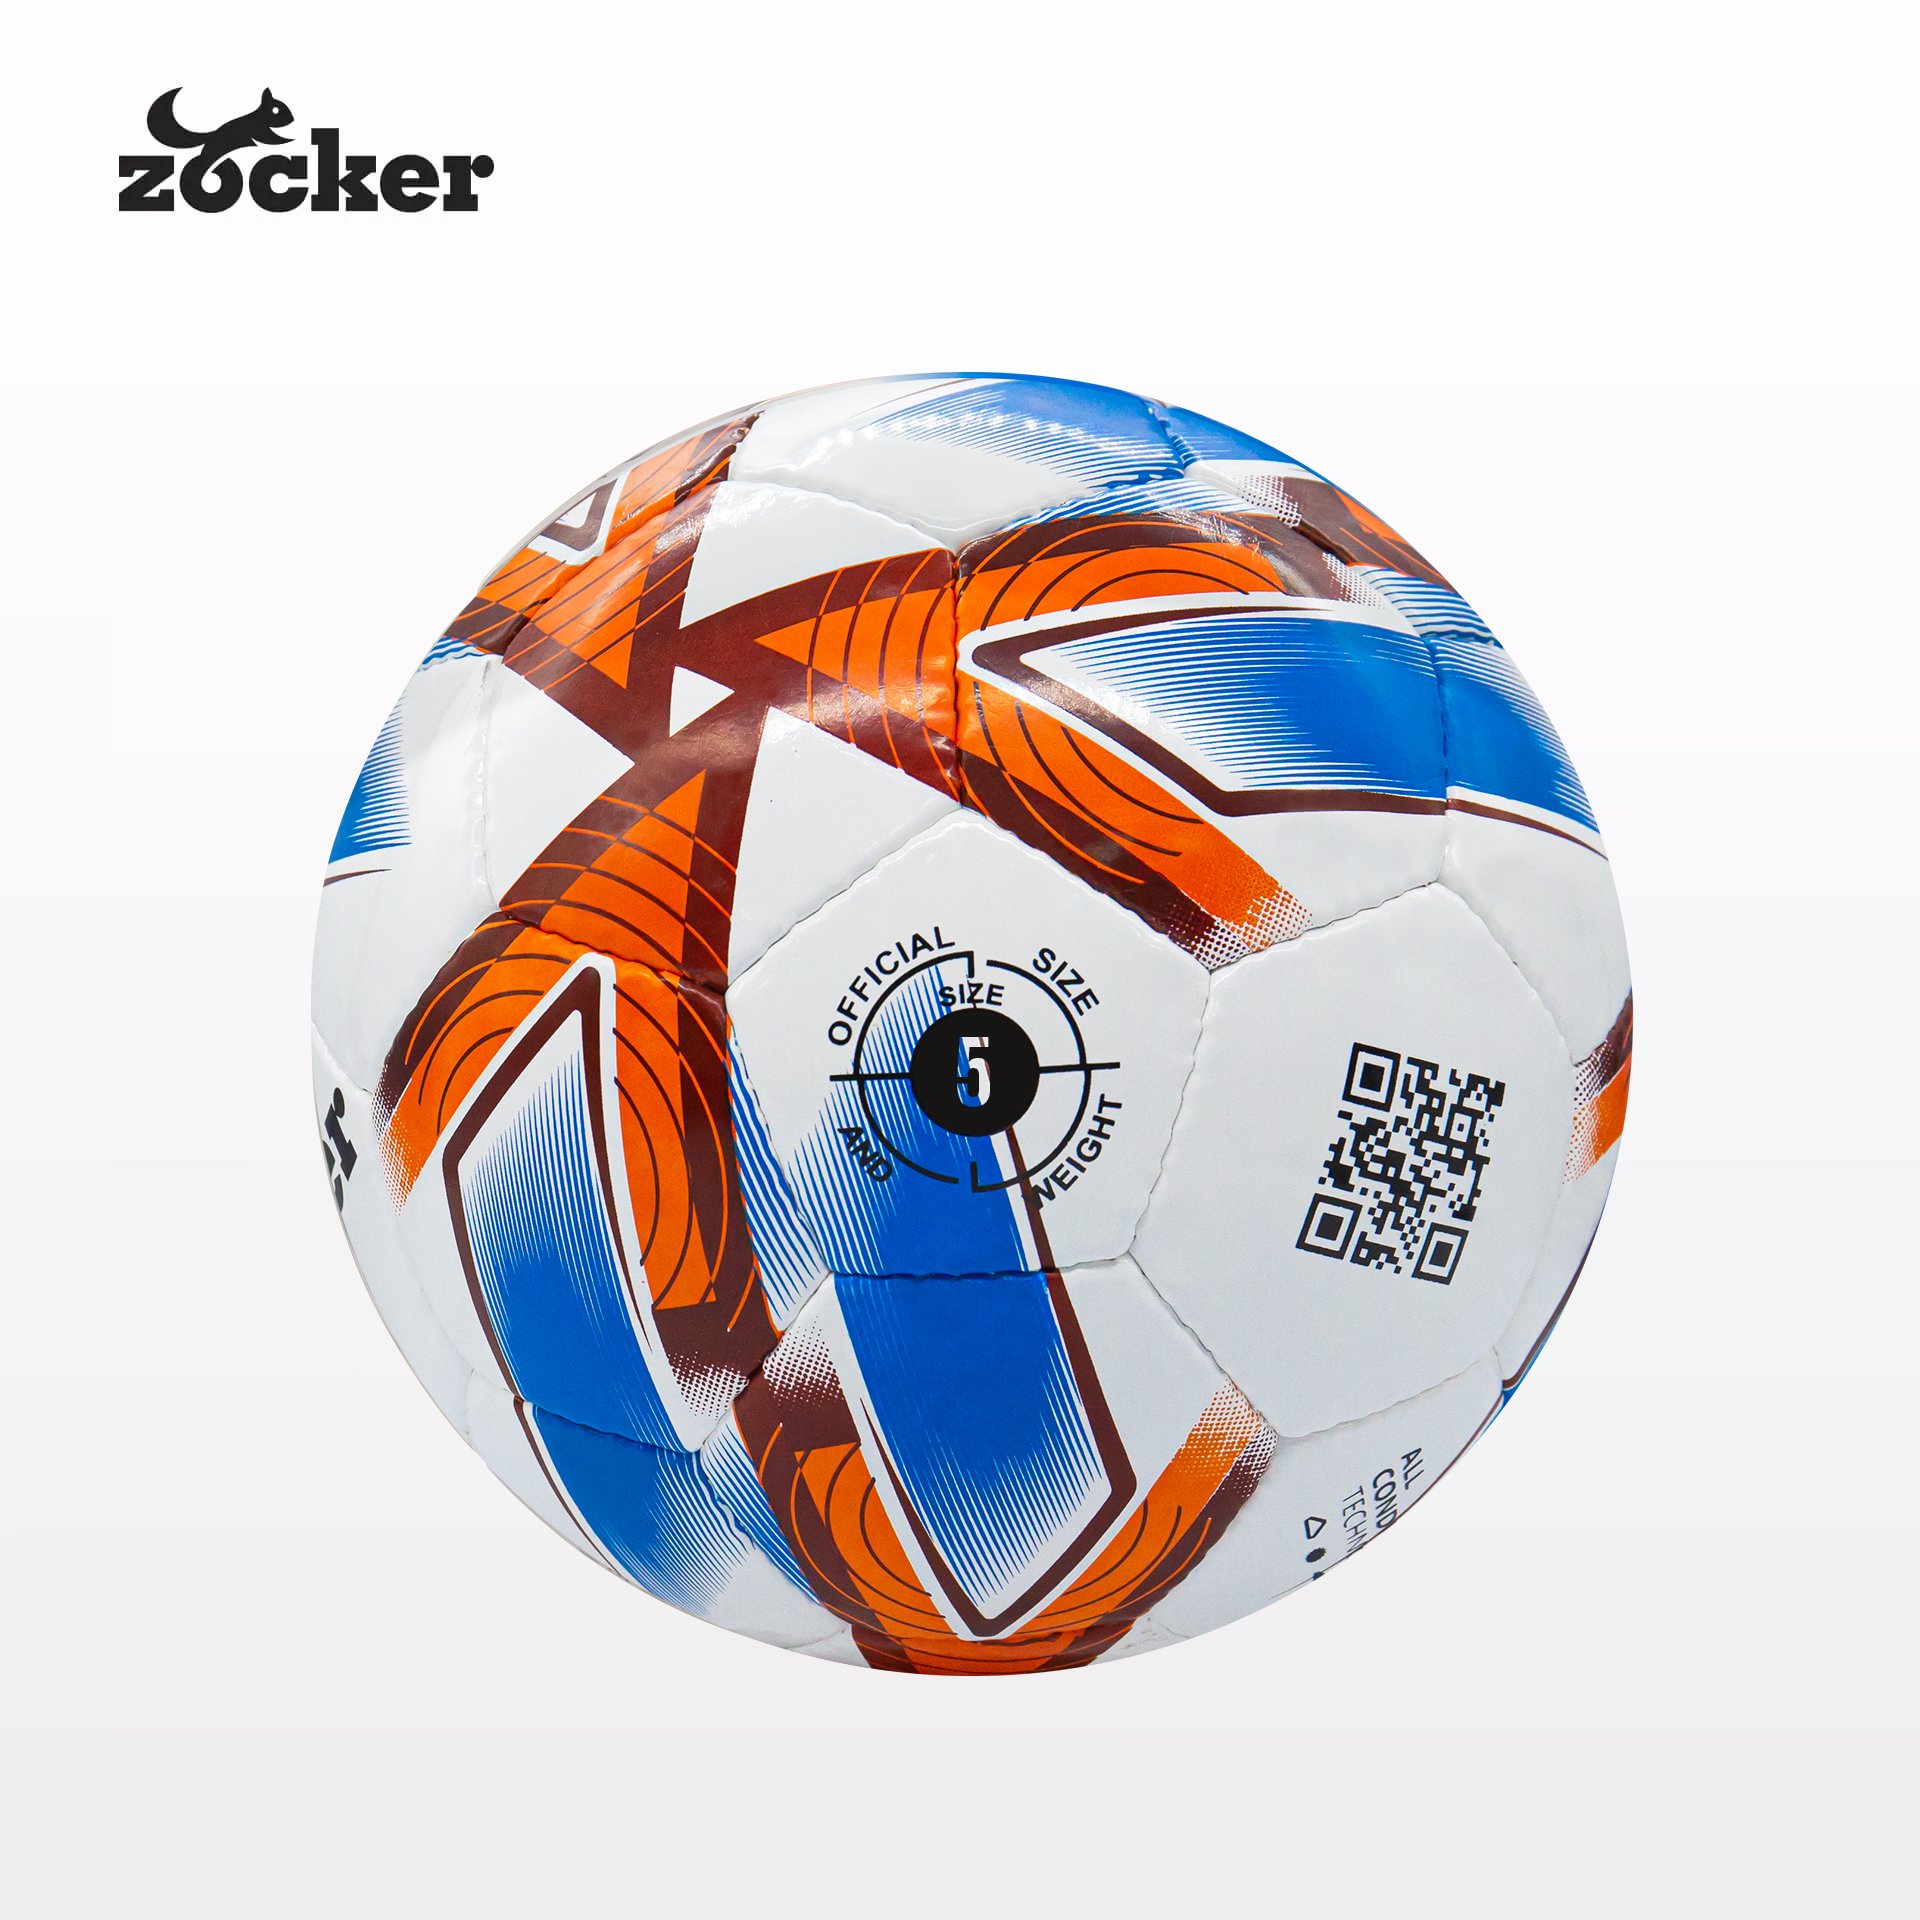 Quả bóng đá Zocker Endo Zk4-E1910 VN, Đá siêu êm, Miễn phí vận chuyển